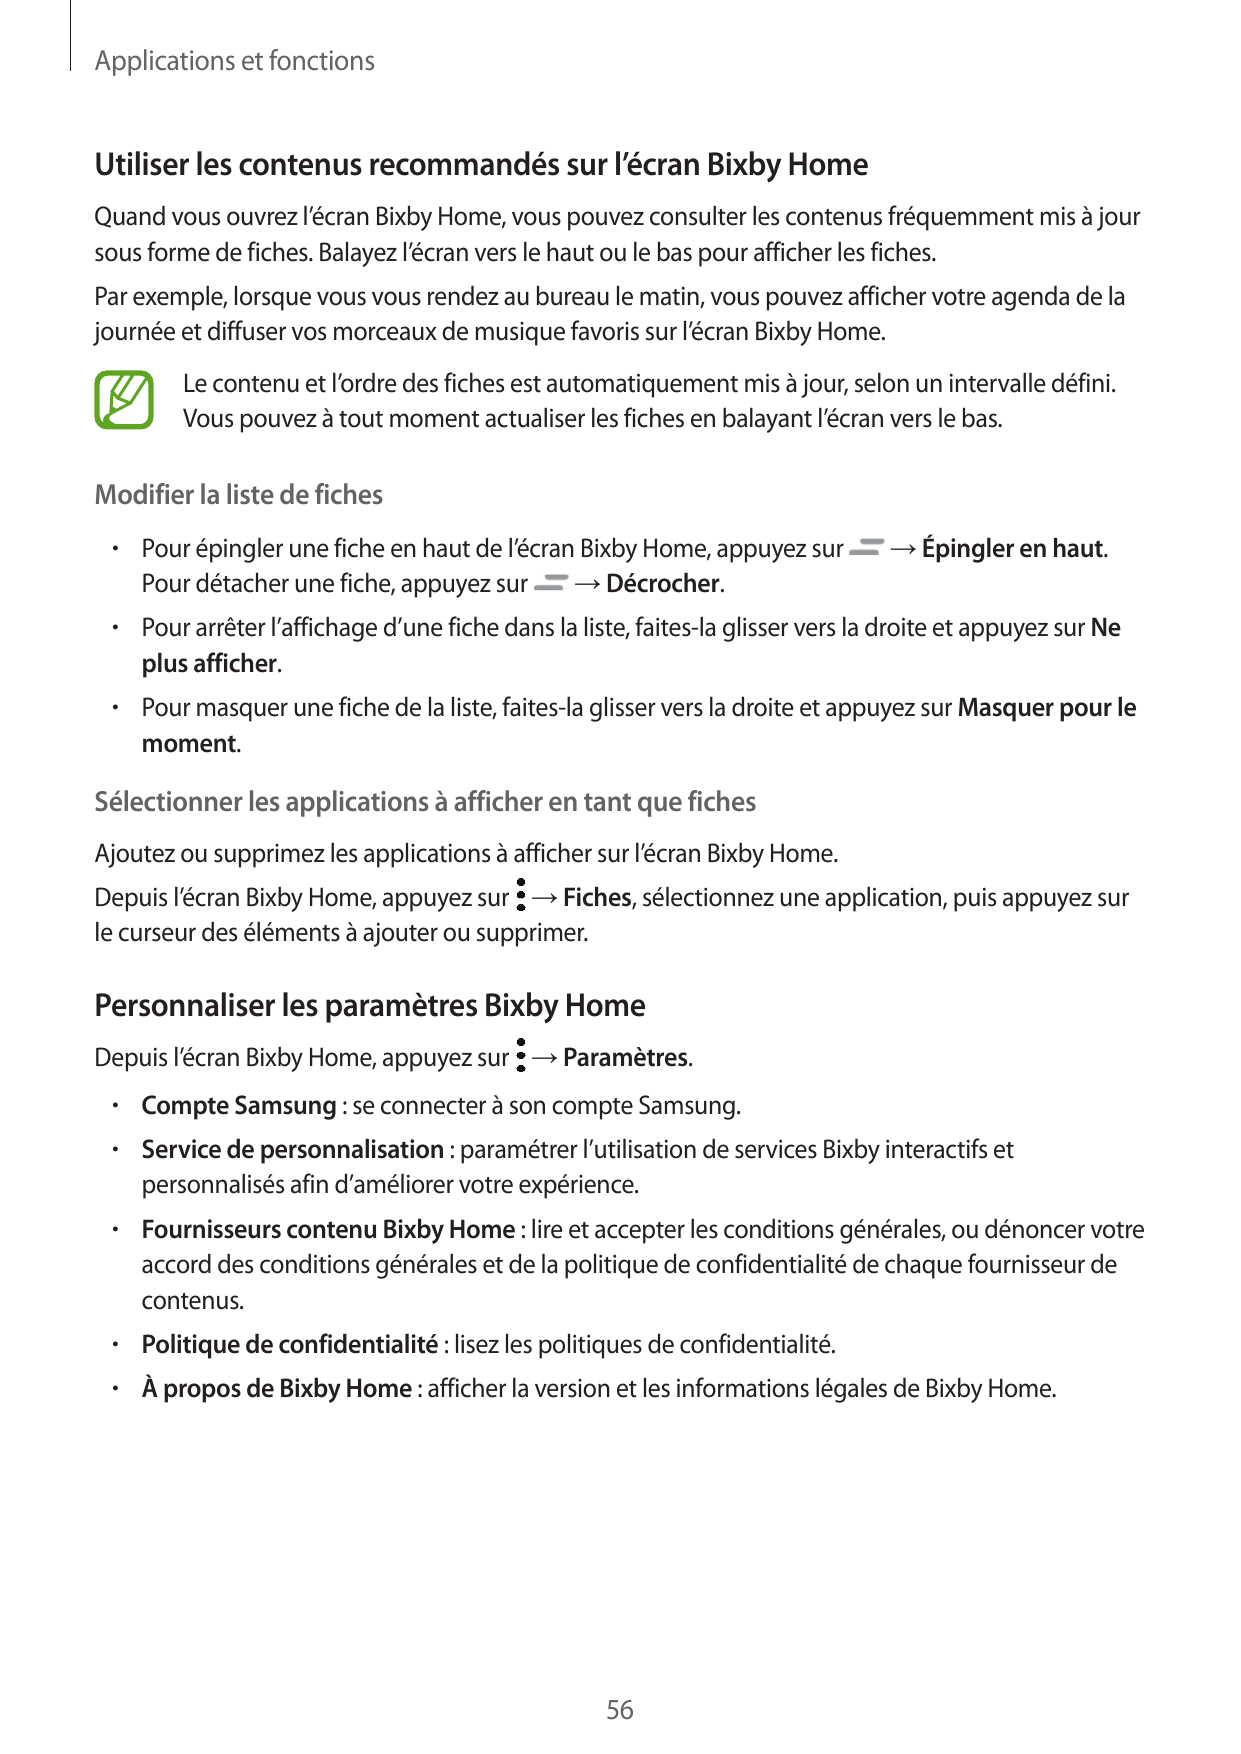 Applications et fonctionsUtiliser les contenus recommandés sur l’écran Bixby HomeQuand vous ouvrez l’écran Bixby Home, vous pouv